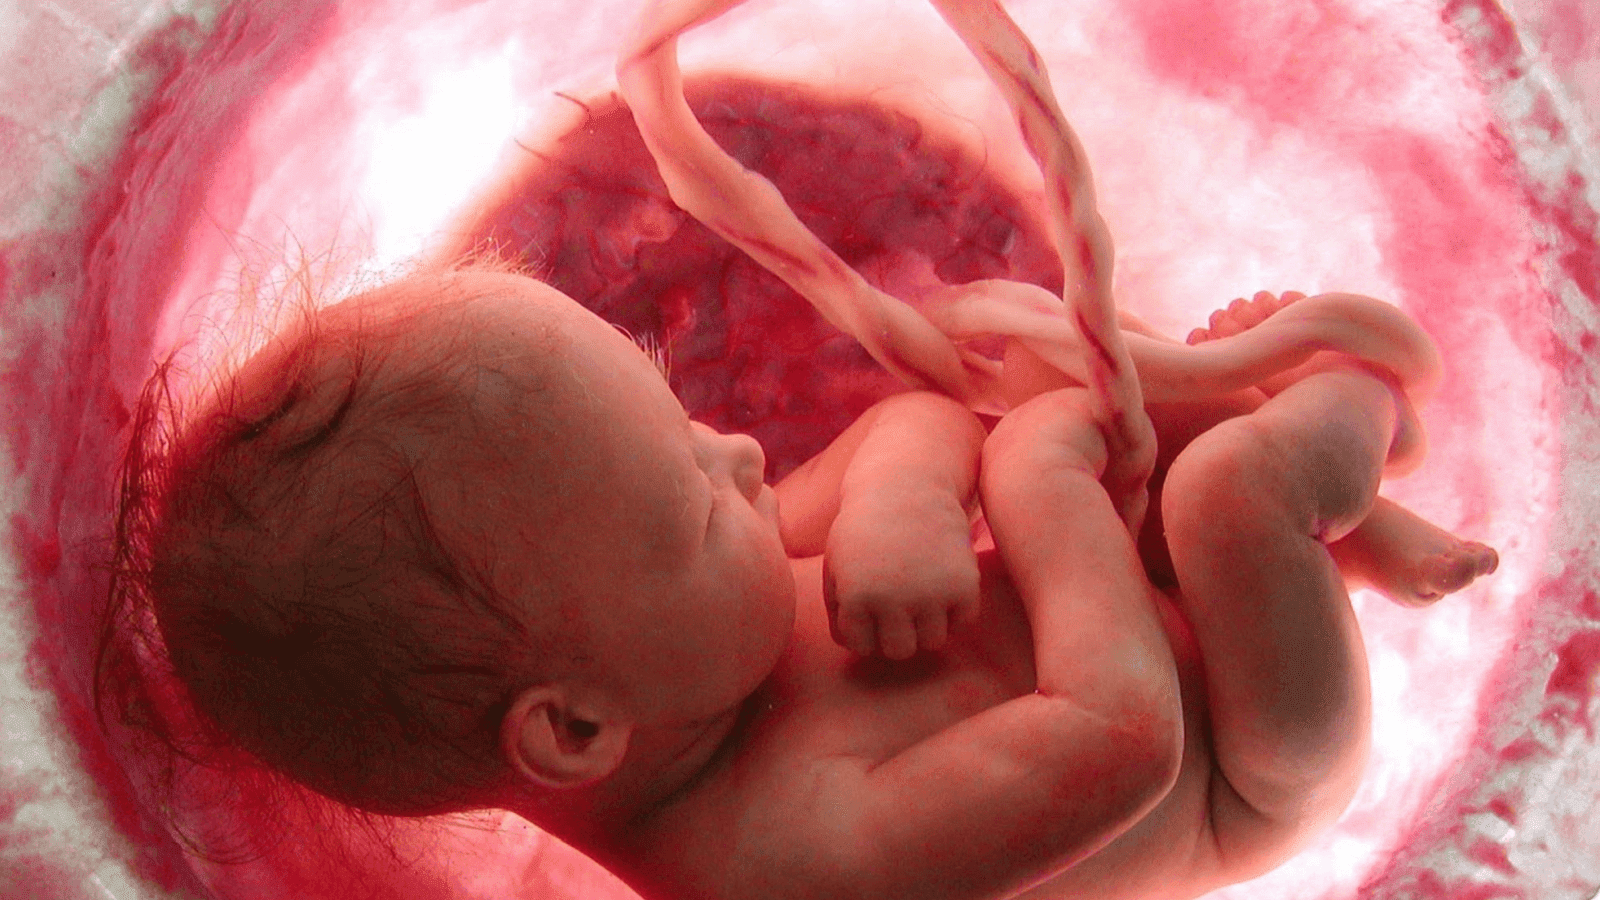 Πως αναπτύσσεται το έμβρυο μέσα στην μήτρα-Το βίντεο με τα 11.000.000 views